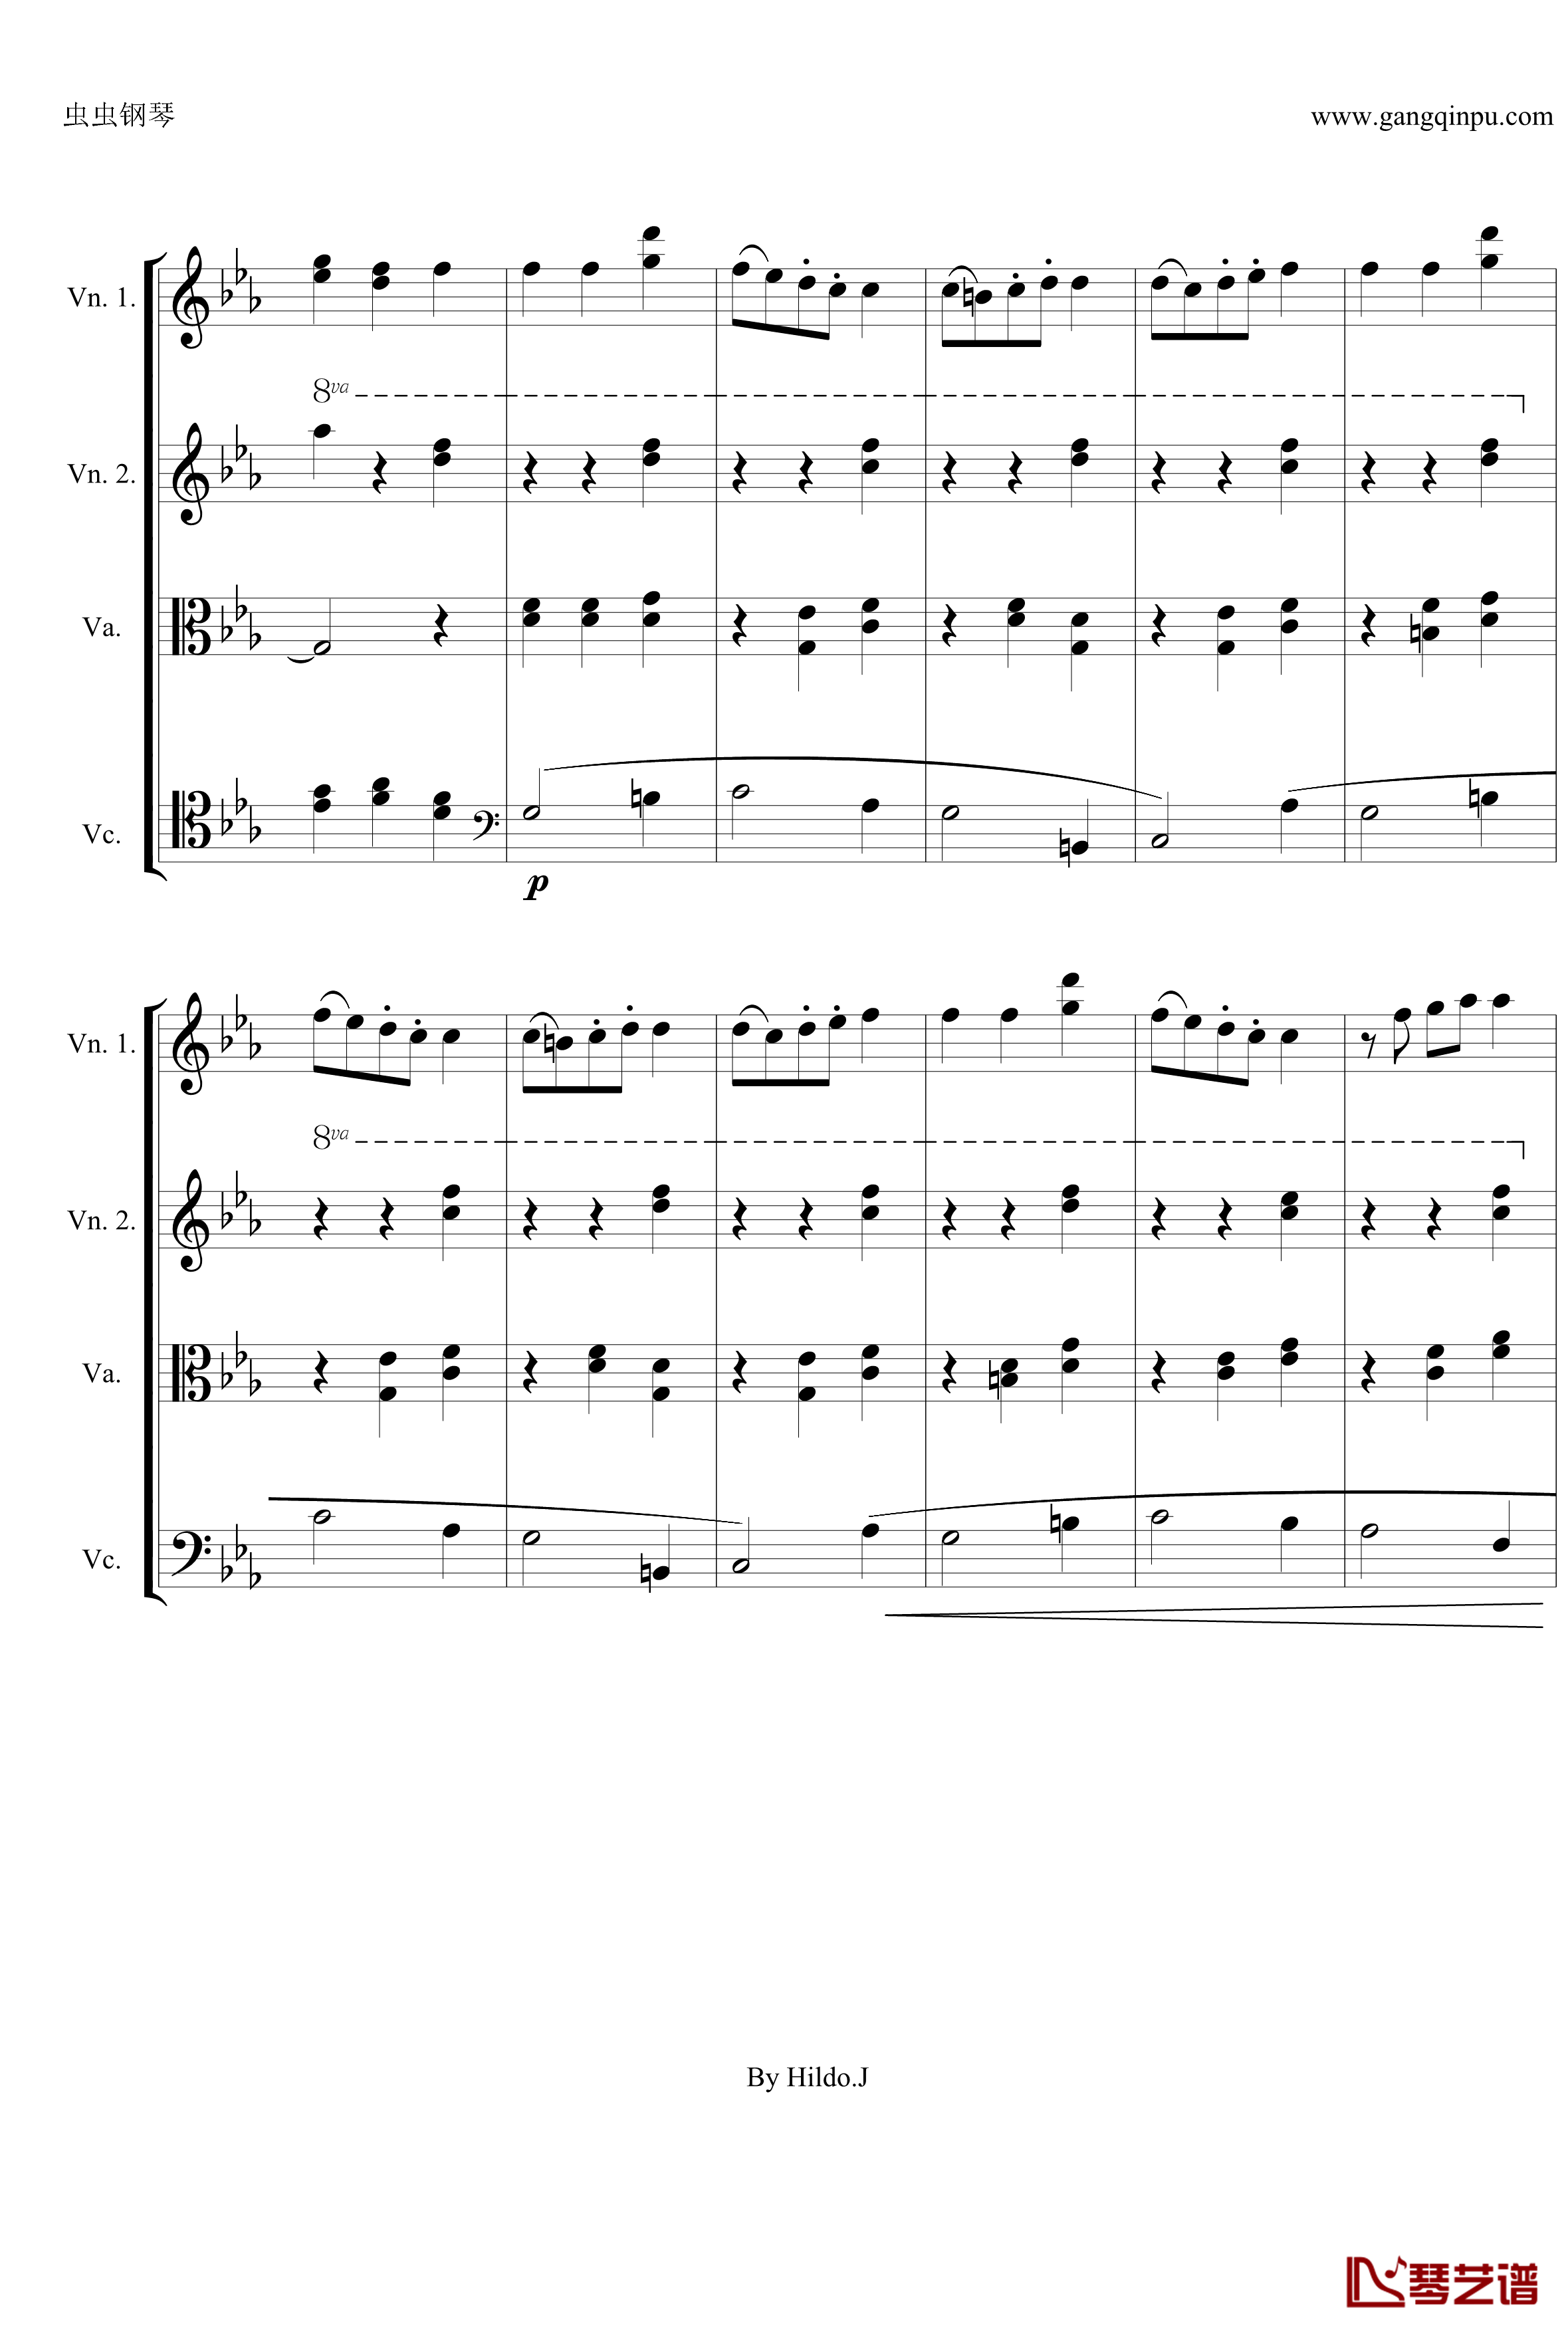 命运交响曲第三乐章钢琴谱-弦乐版-贝多芬-beethoven9